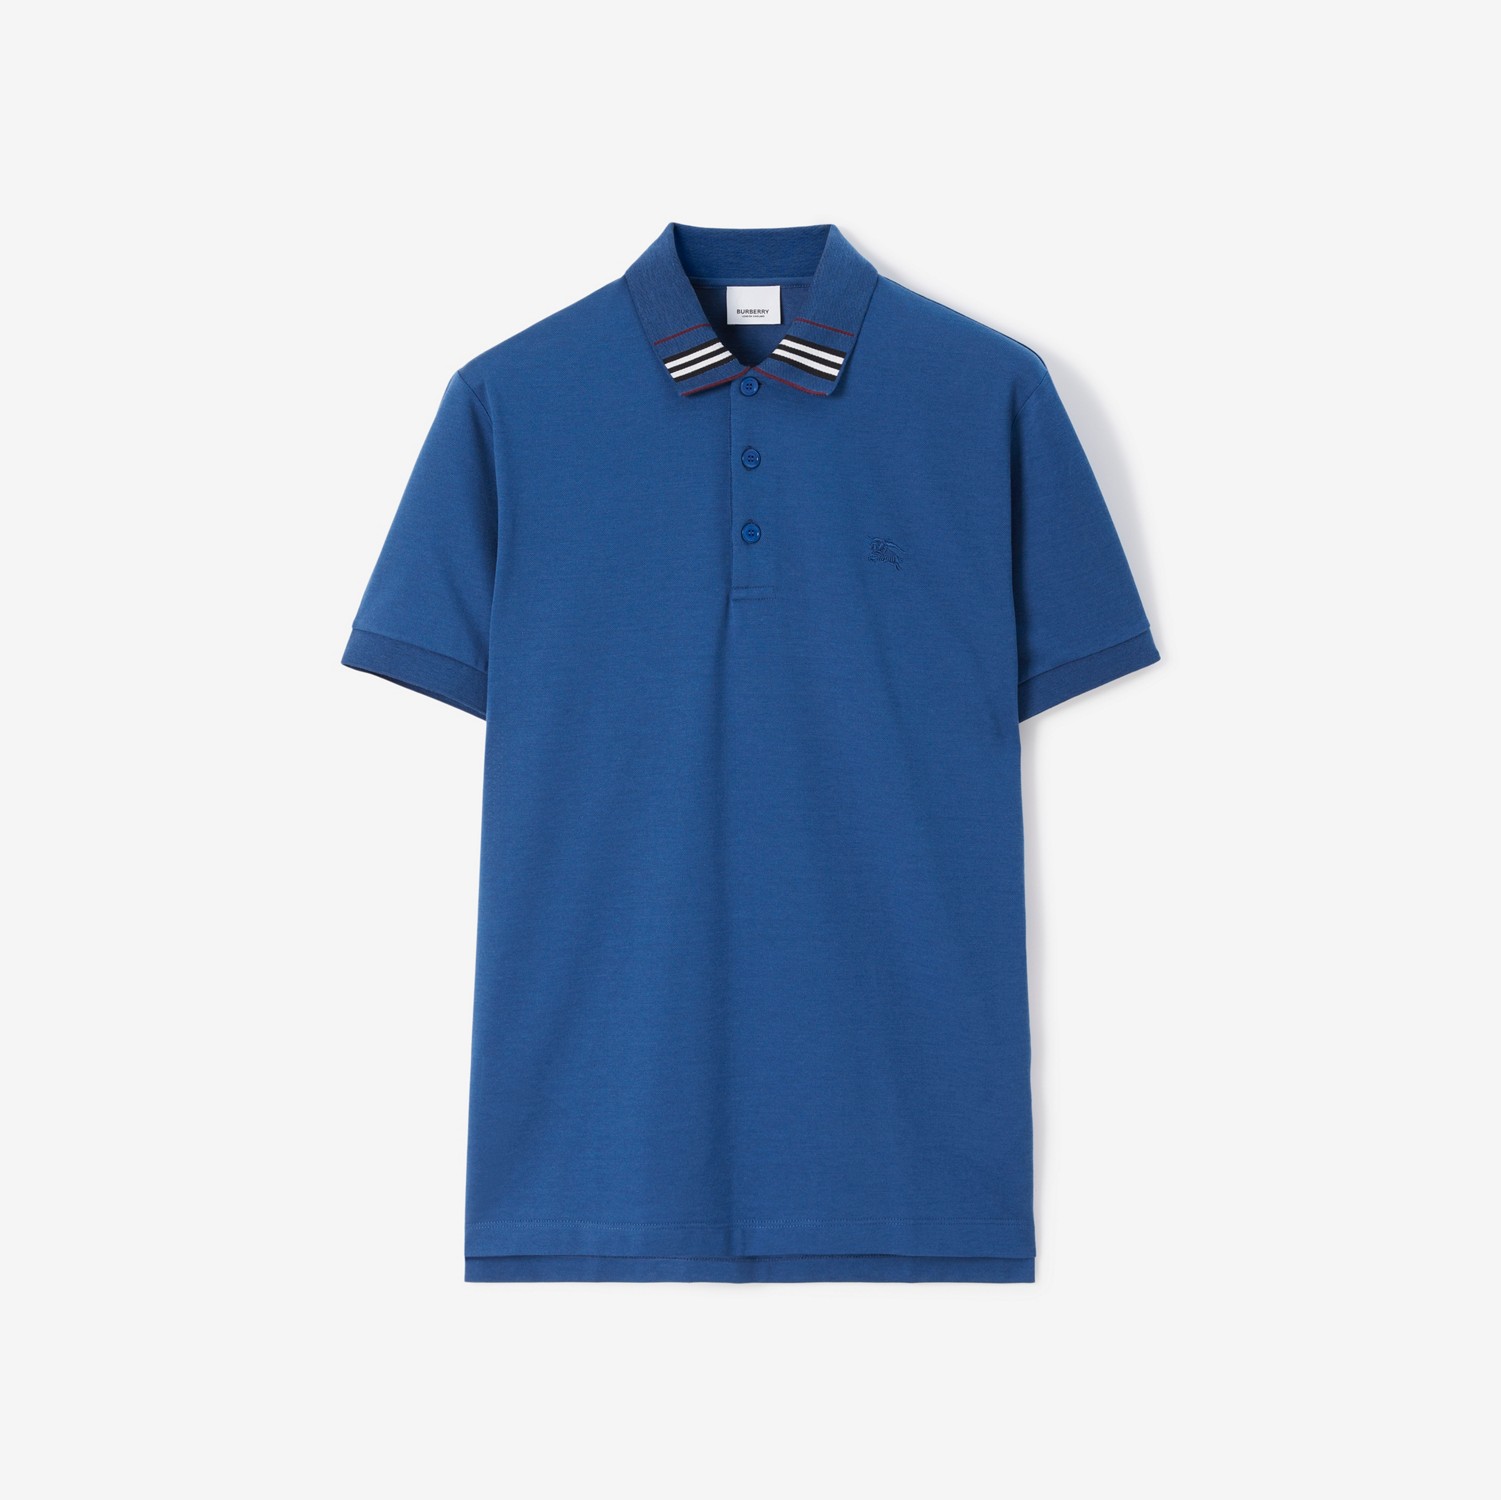 Poloshirt aus Baumwolle und Seide mit EKD-Motiv (Sattes Marineblau) - Herren | Burberry®